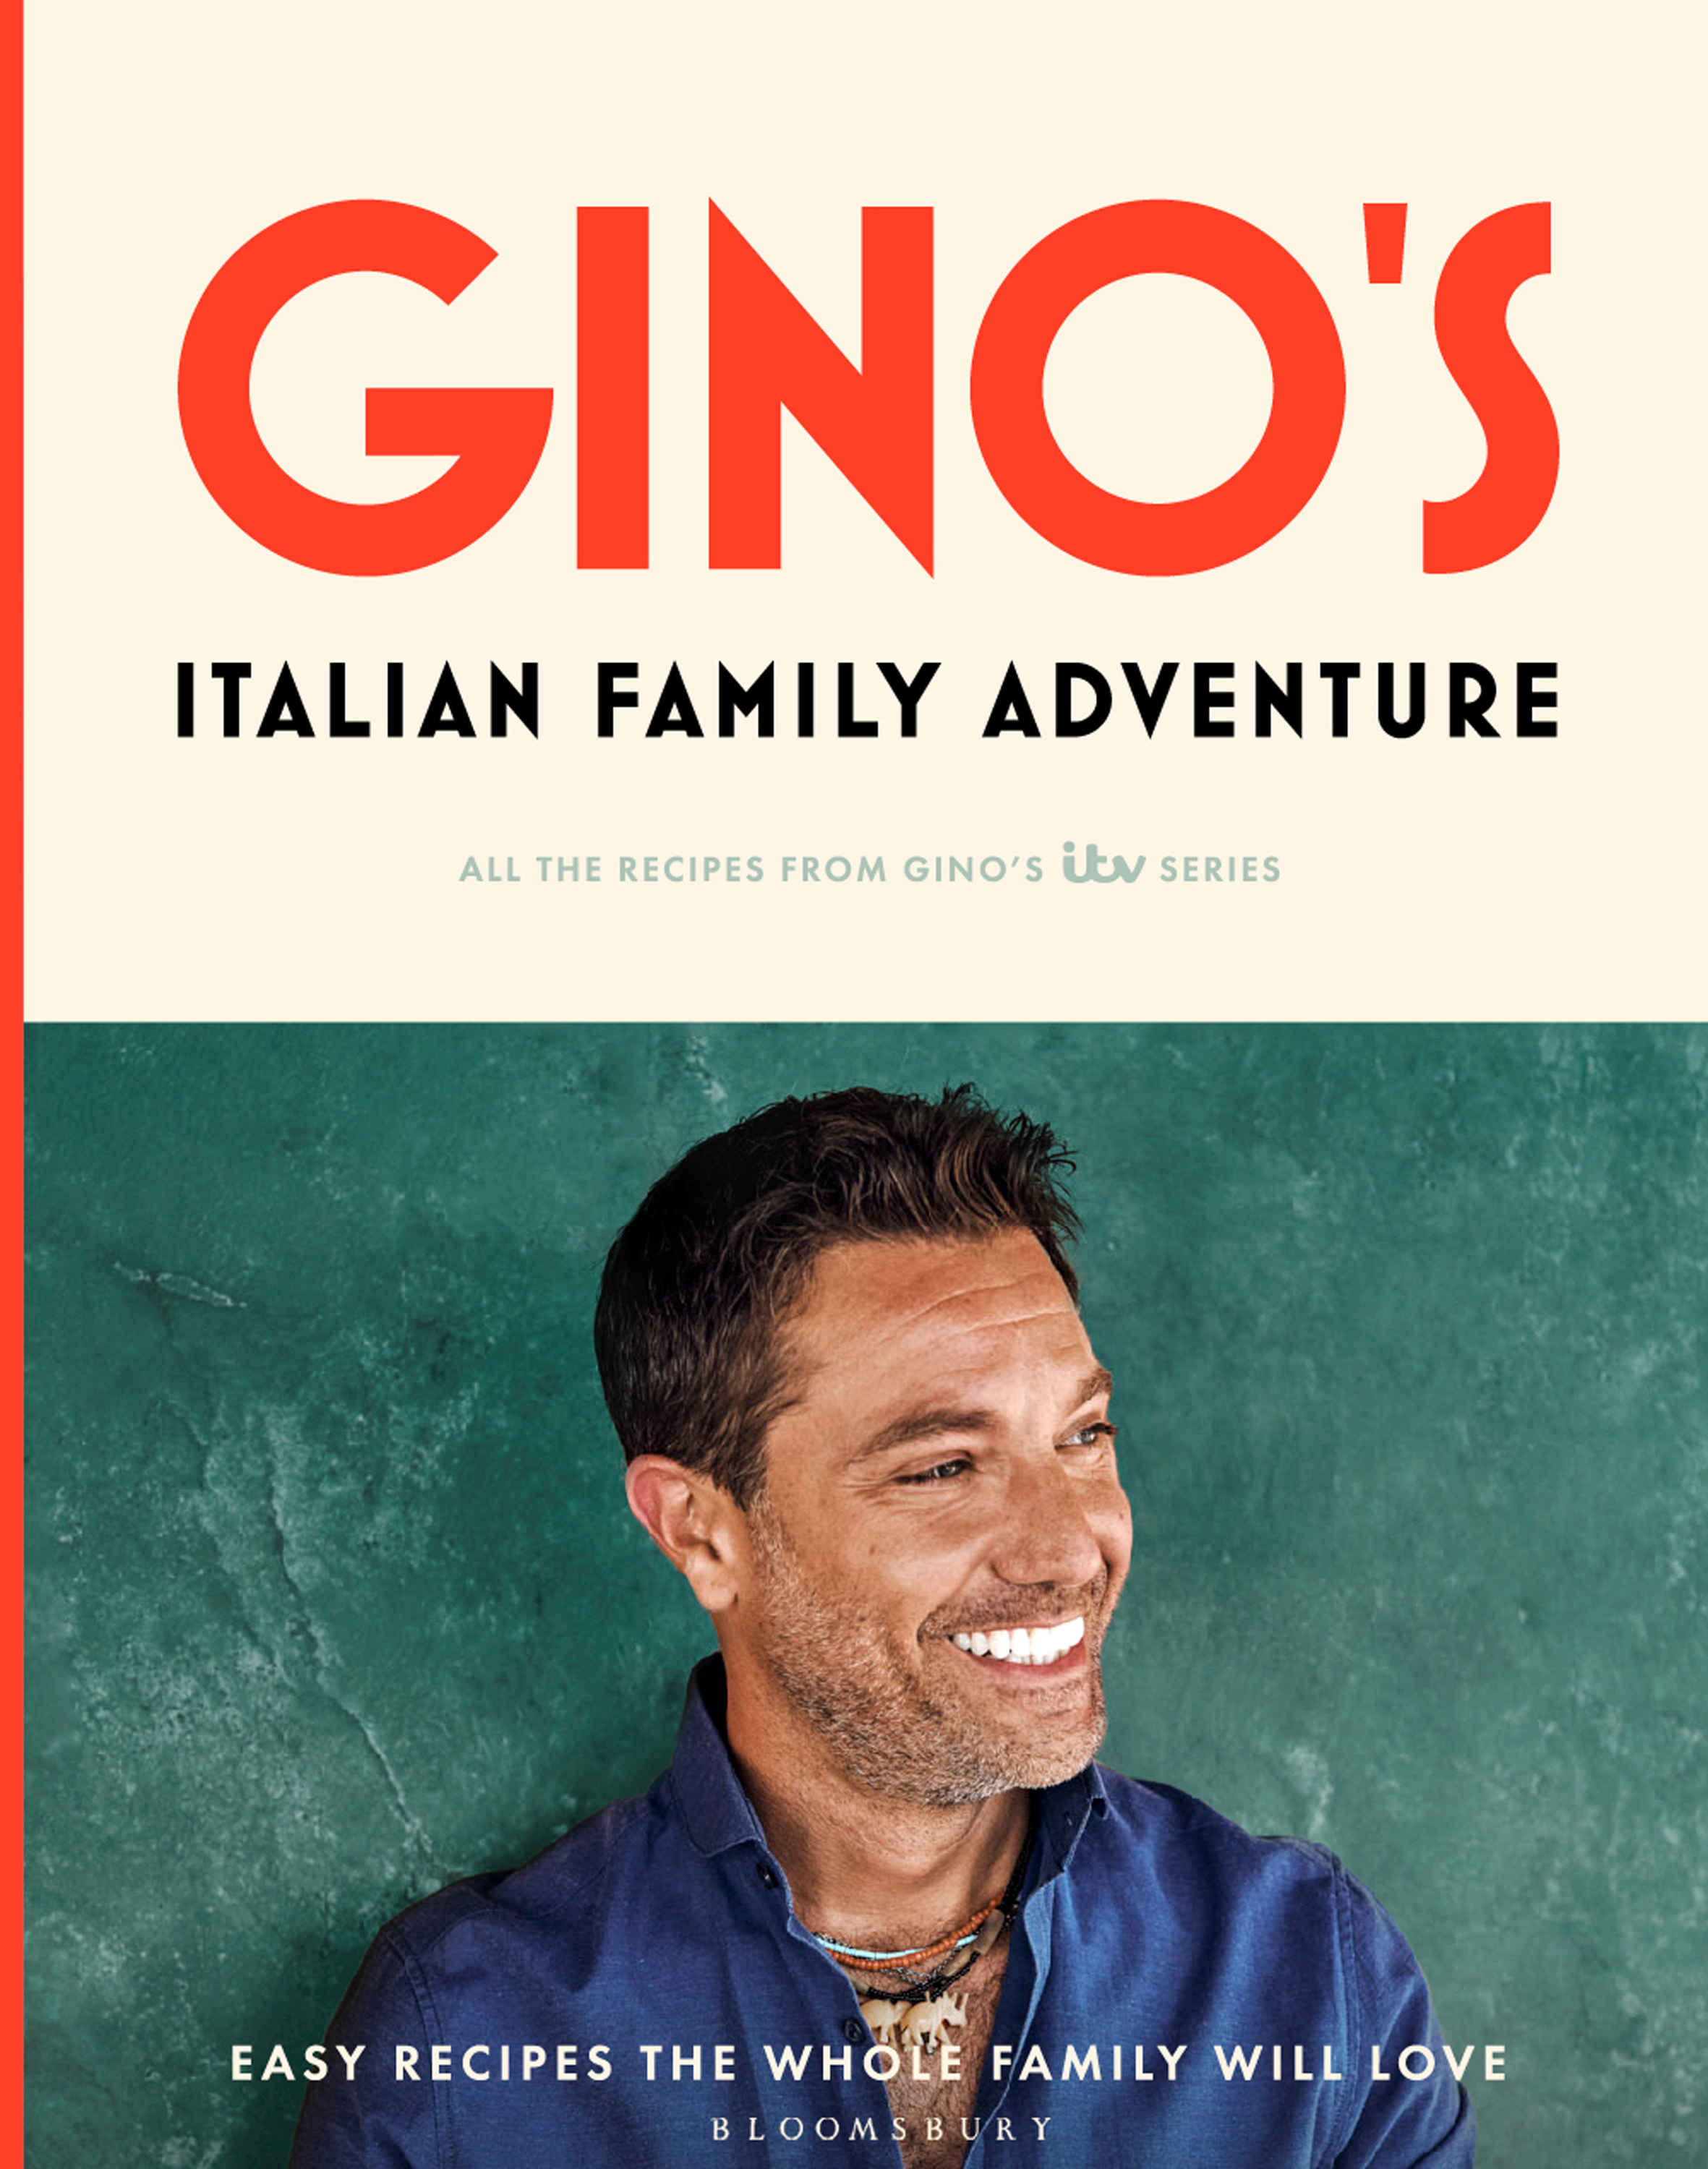 Gino's Italian Family Adventure: Easy Recipes the Whole Family will Love by Gino D'Acampo (Haarala Hamilton/PA)